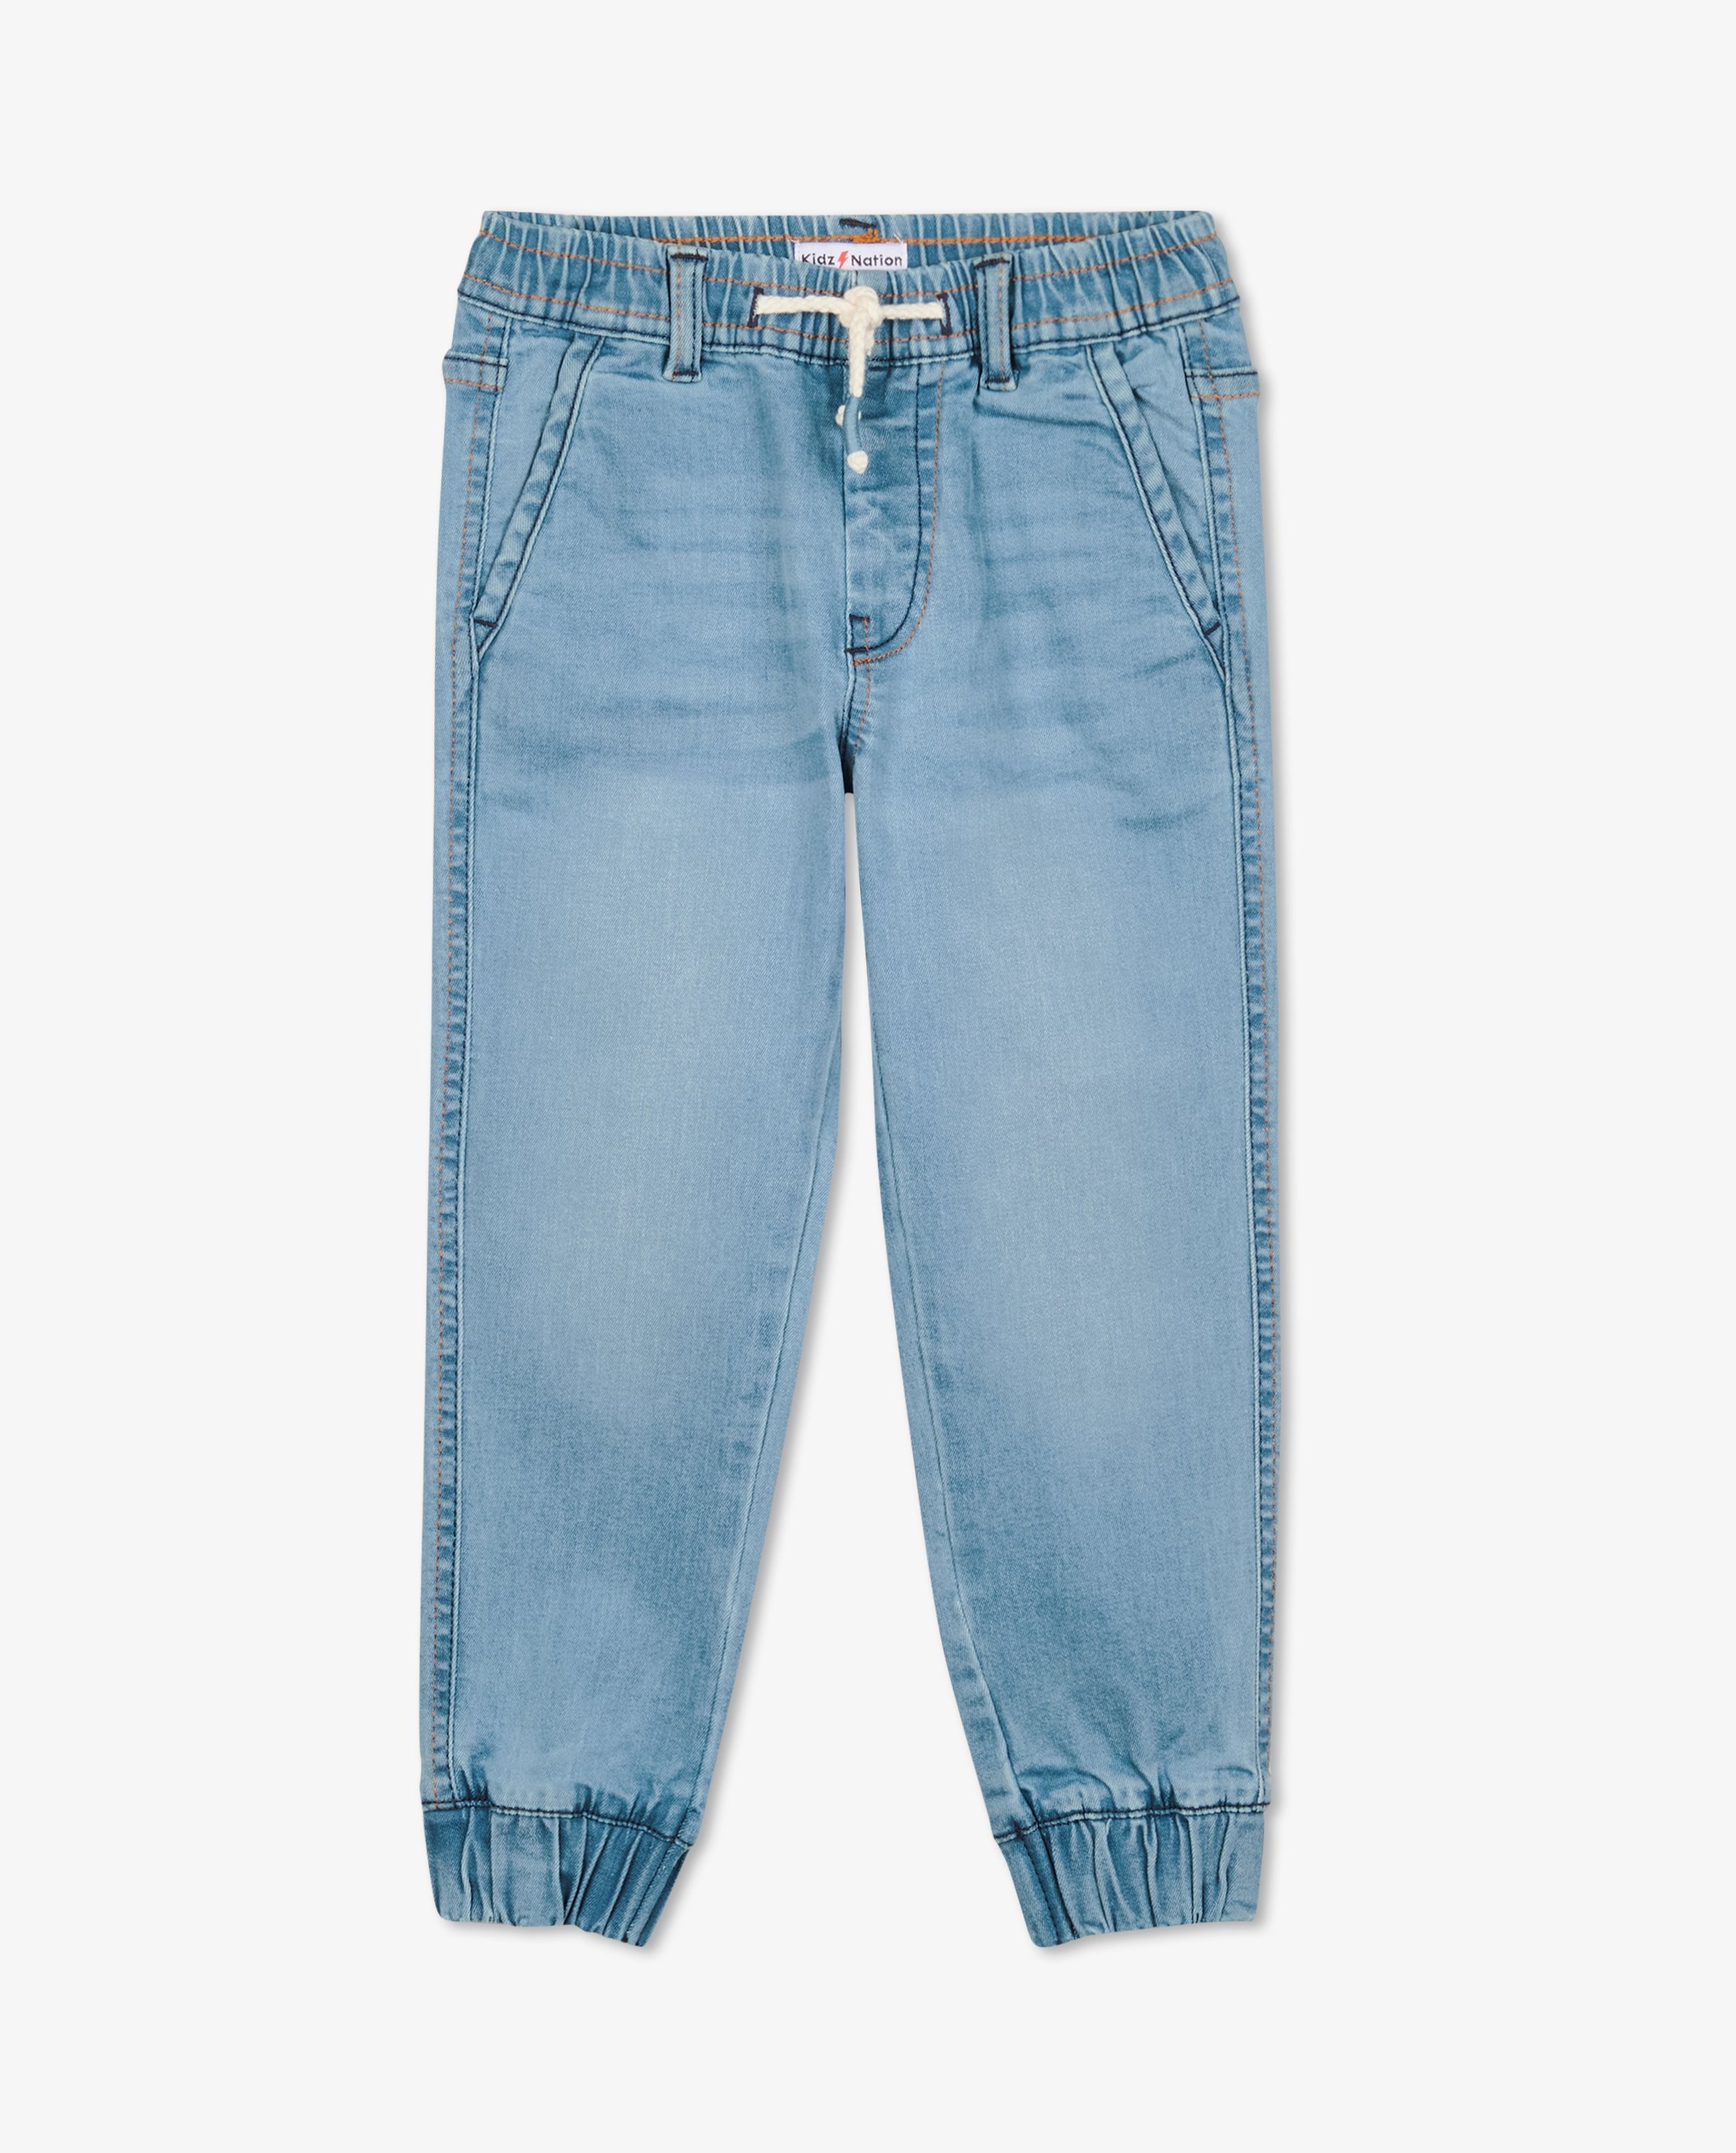 Jeans - Blauwe broek, tapered fit